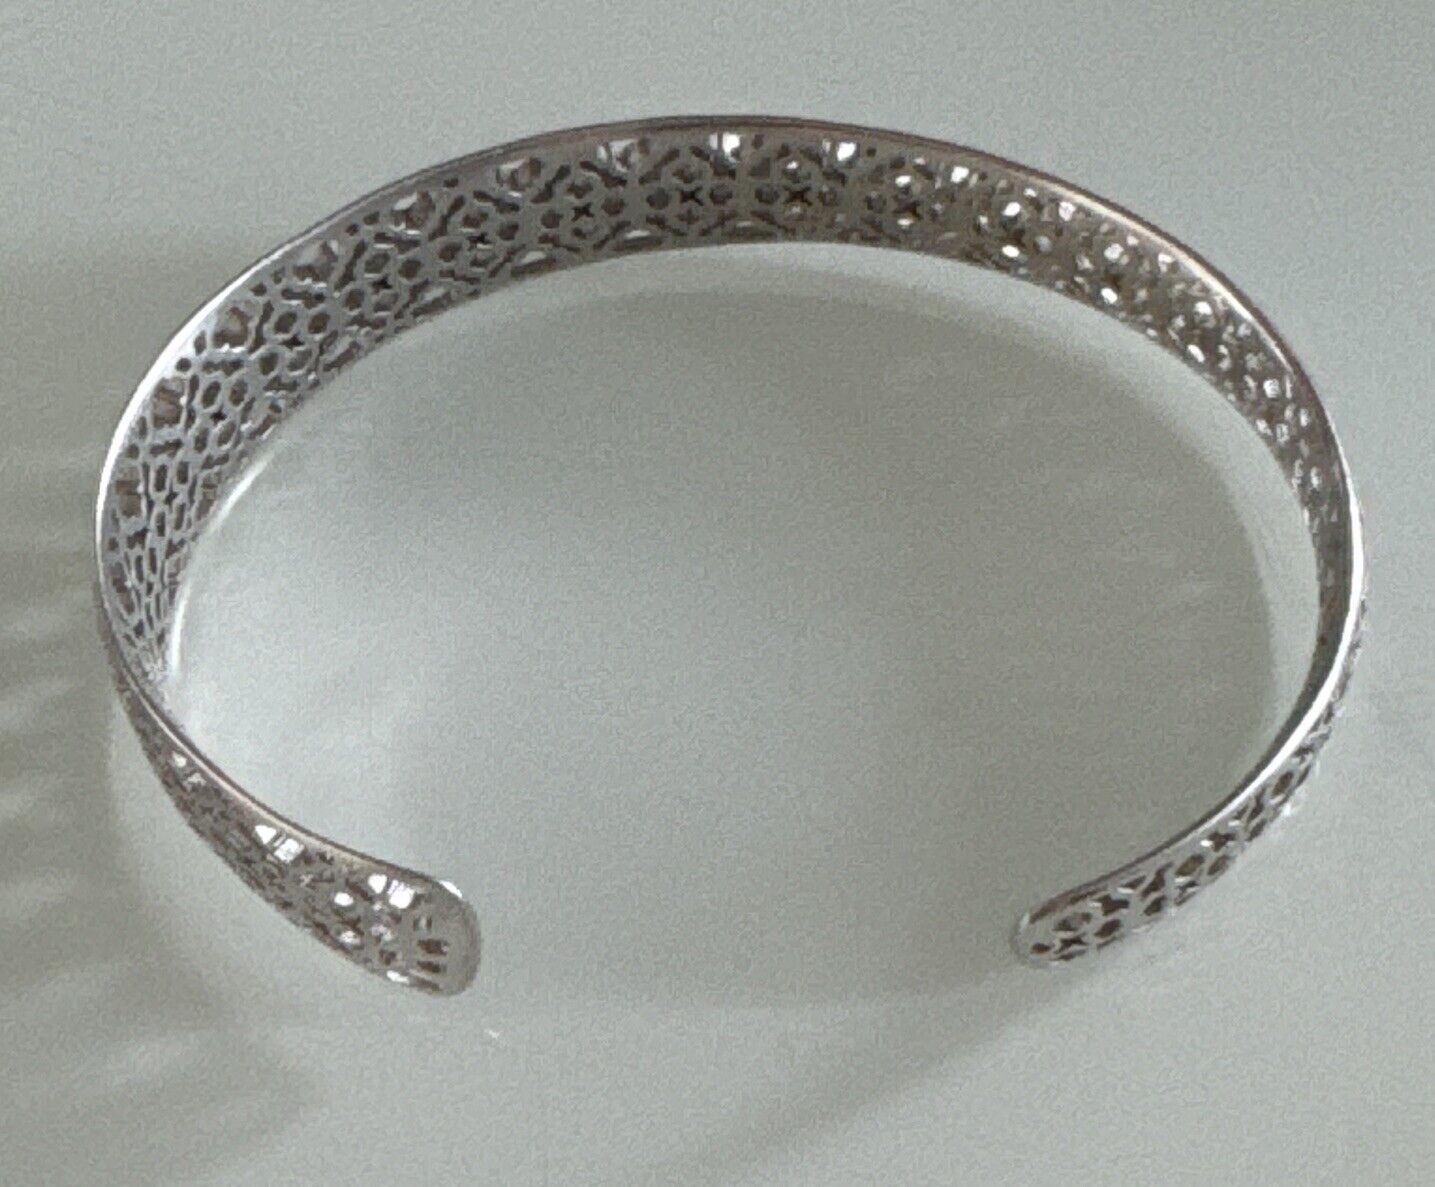 Kendra Scott Cuff Bracelet Silver - image 5